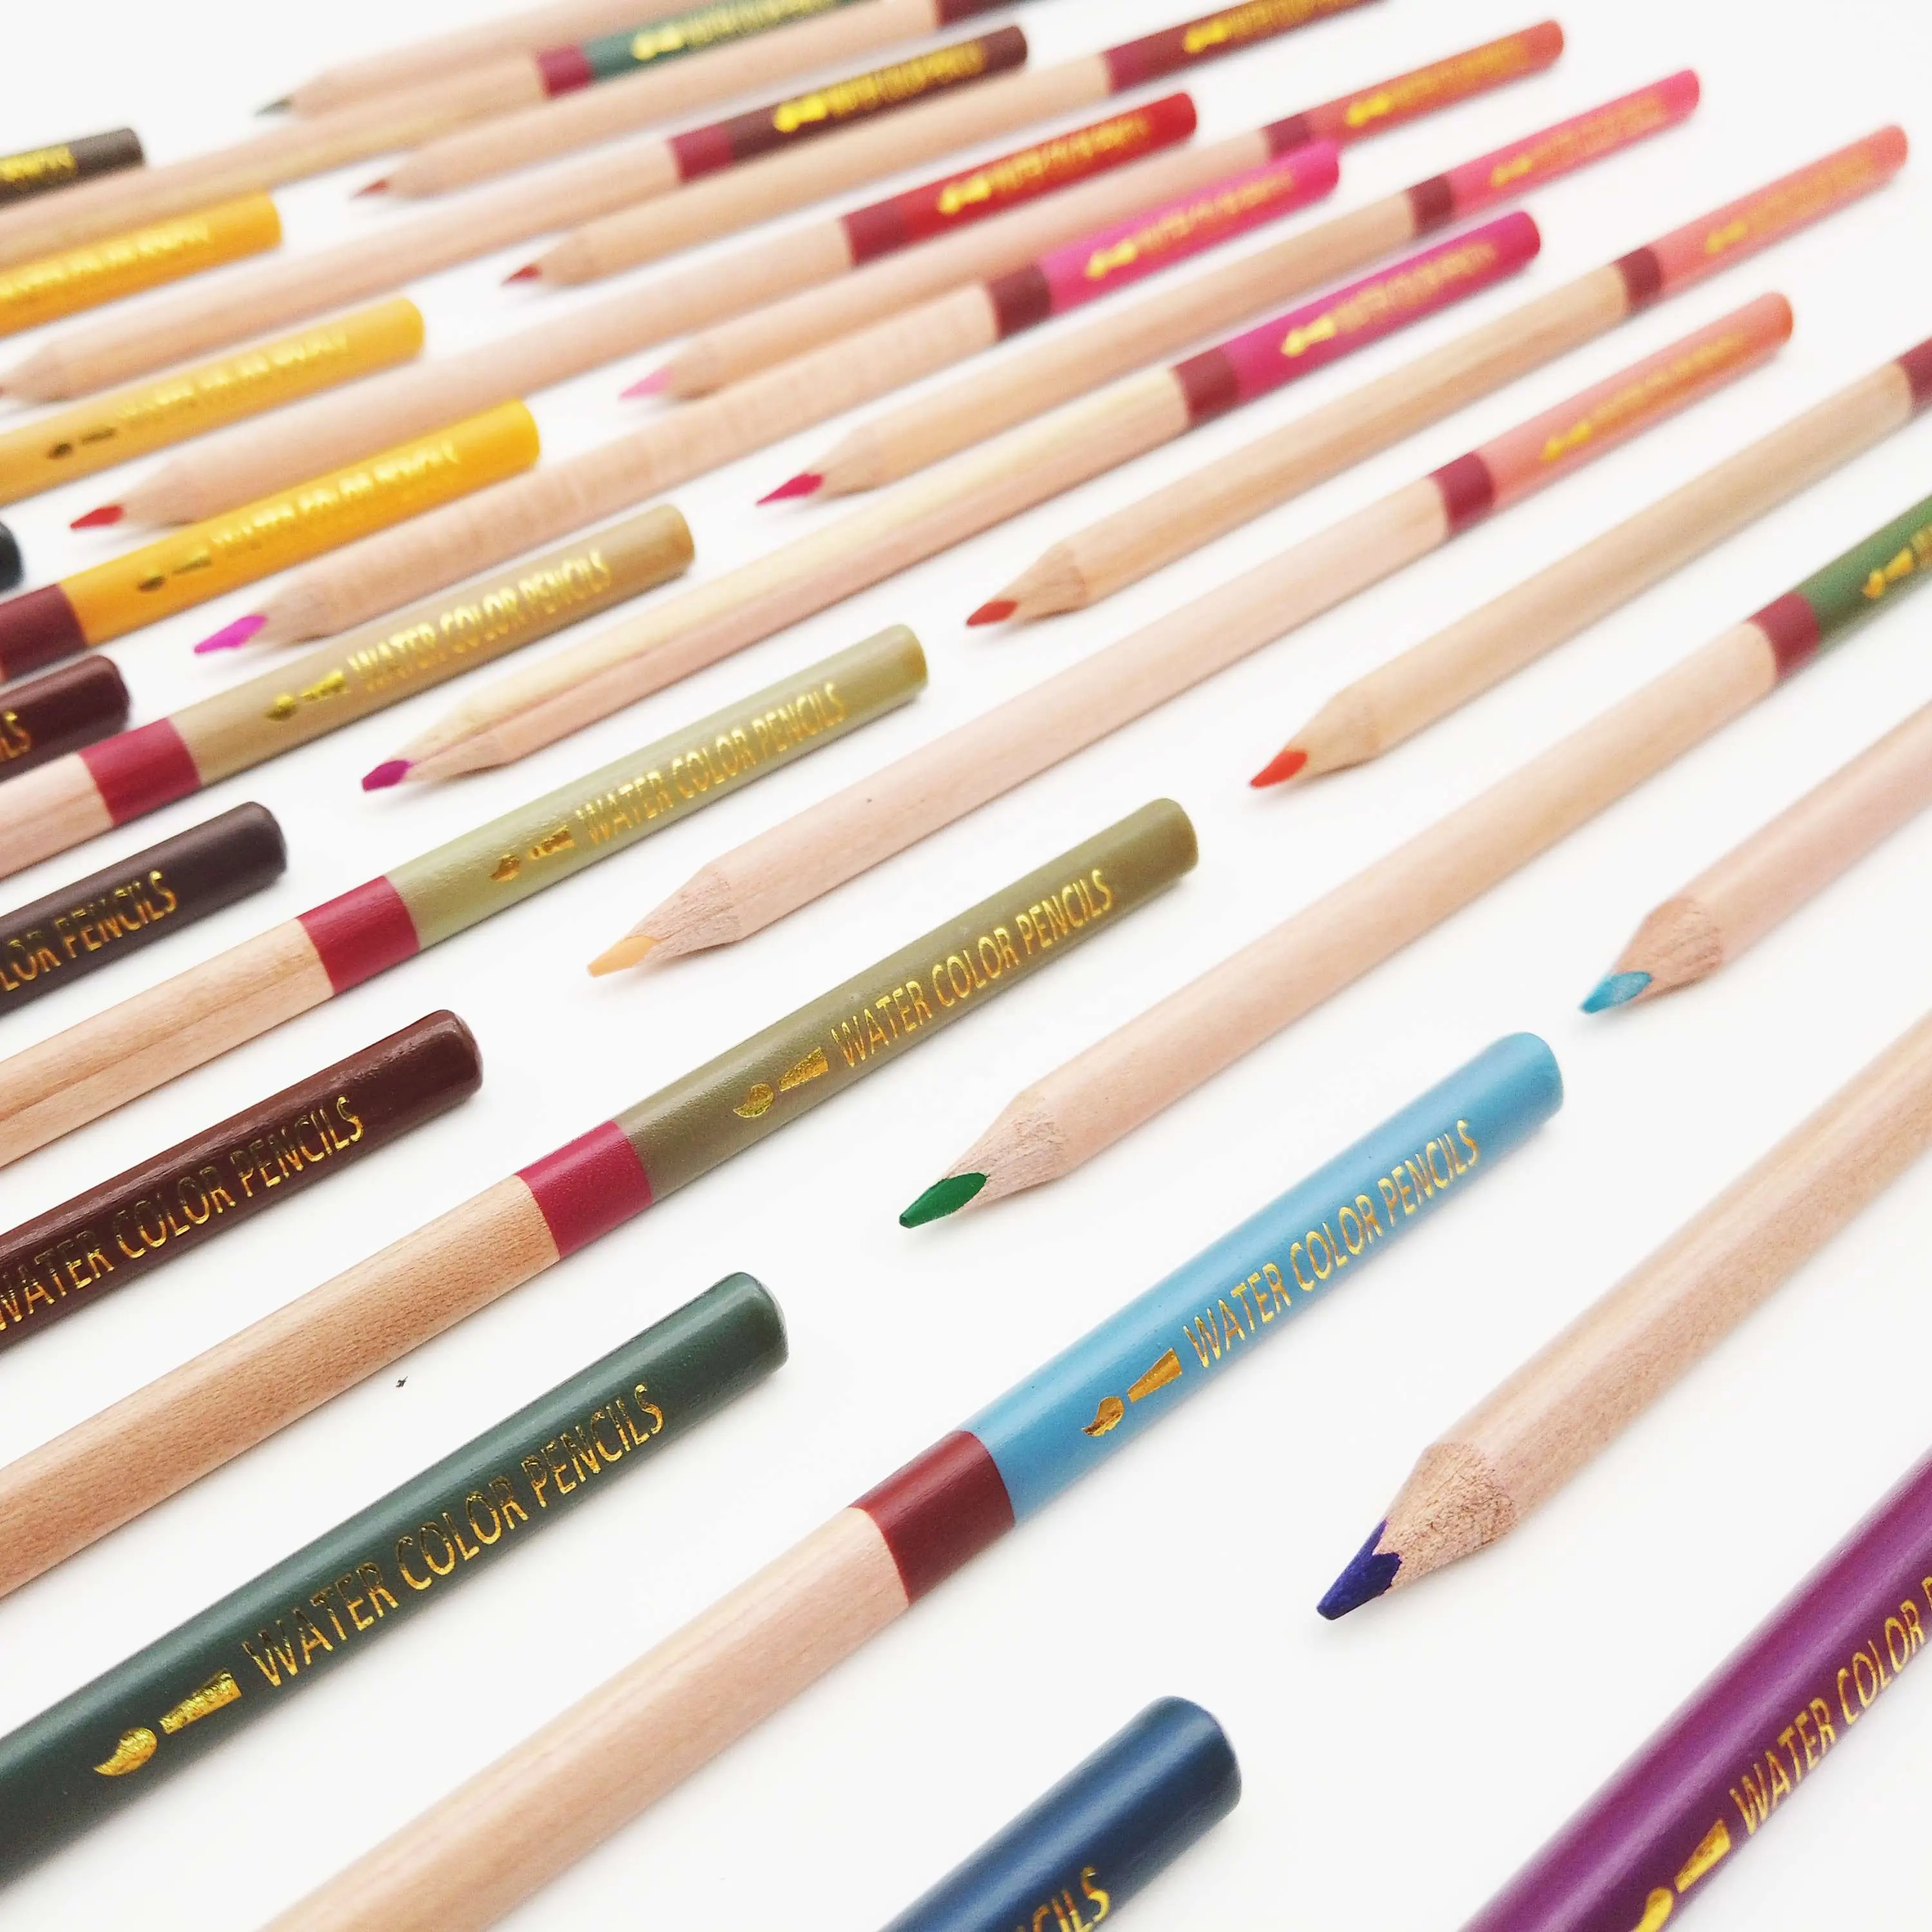 Suluboya kalem seti 48, preslenmiş, üçgen şekilli renkli kalemler yetişkinler ve çocuklar için, çizim, eskiz ve P